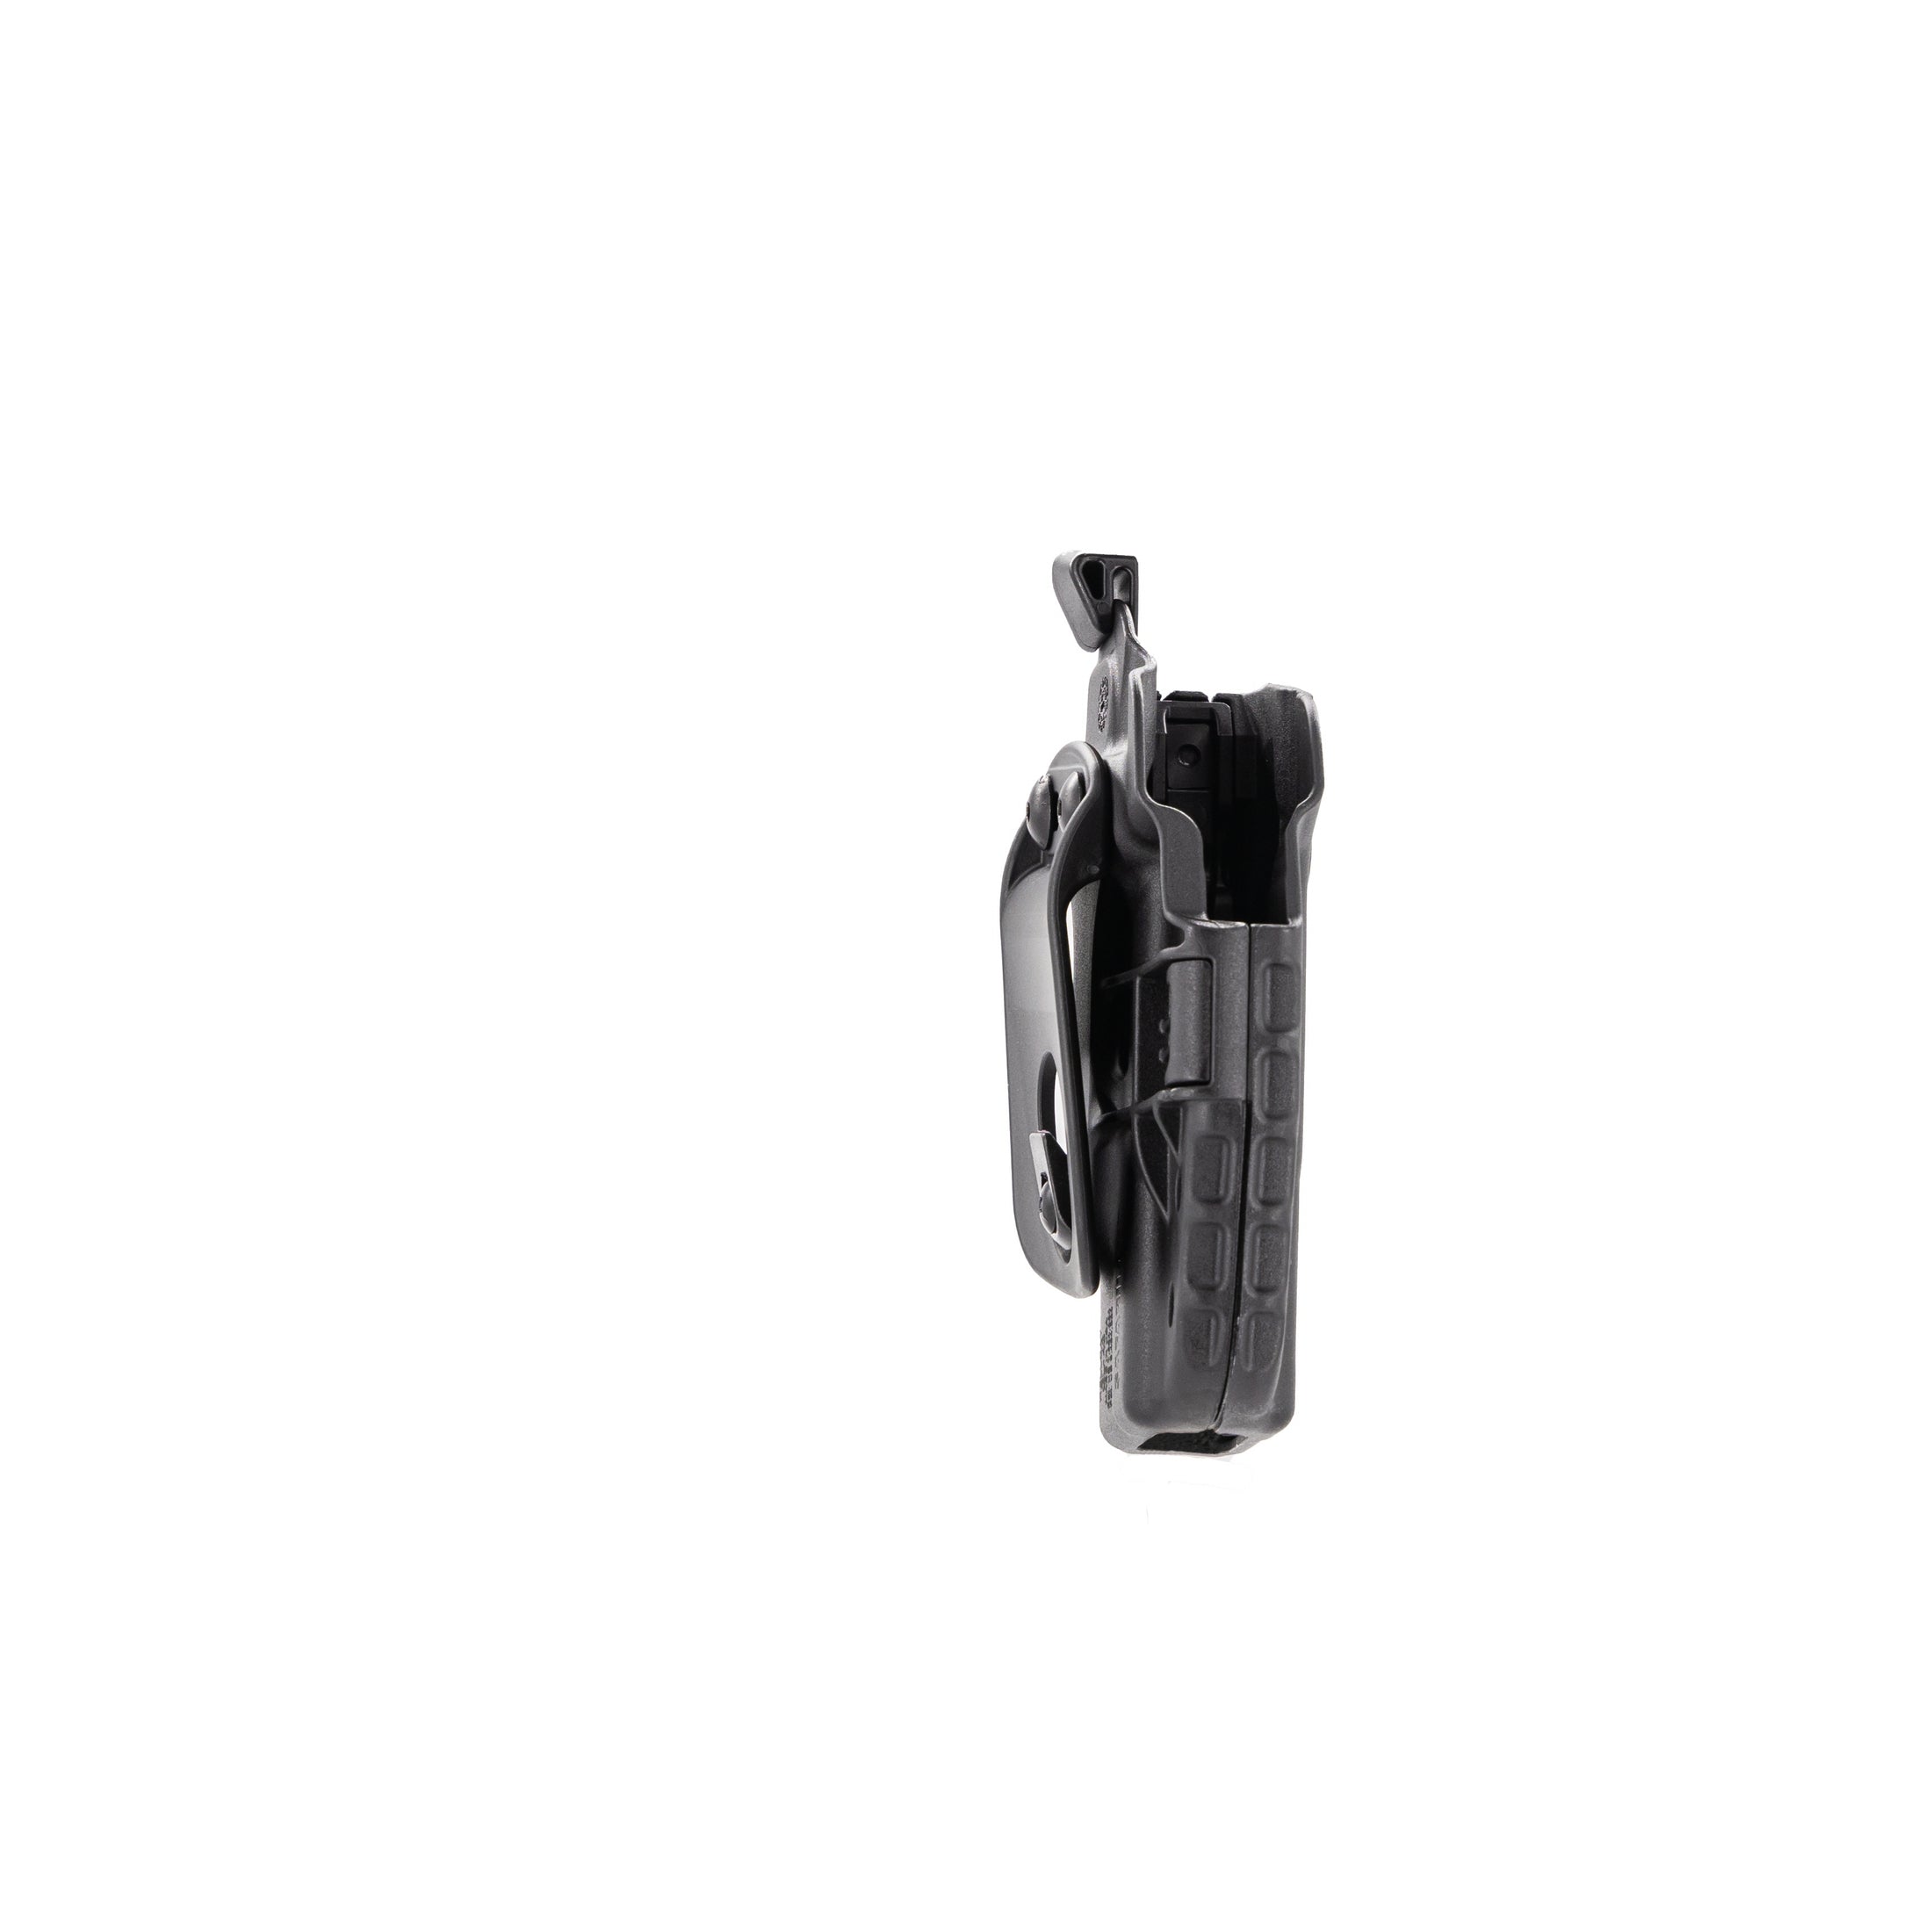 Safariland #7053-895-411 Lightweight Shoulder Holster Black Glock 43 3.39 RH